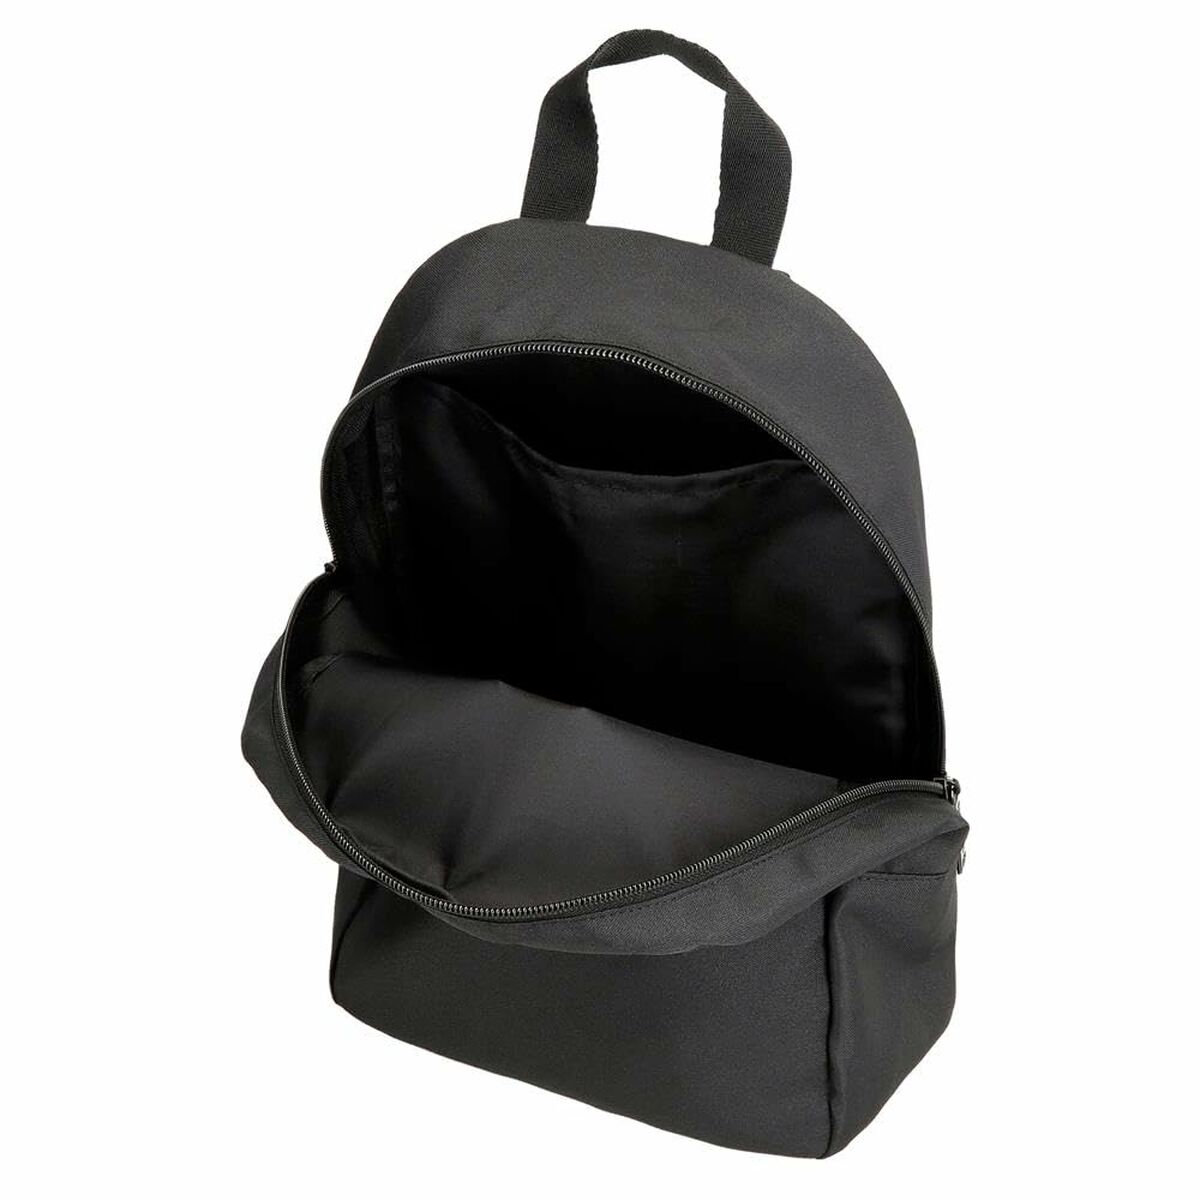 Casual Backpack Reebok Black